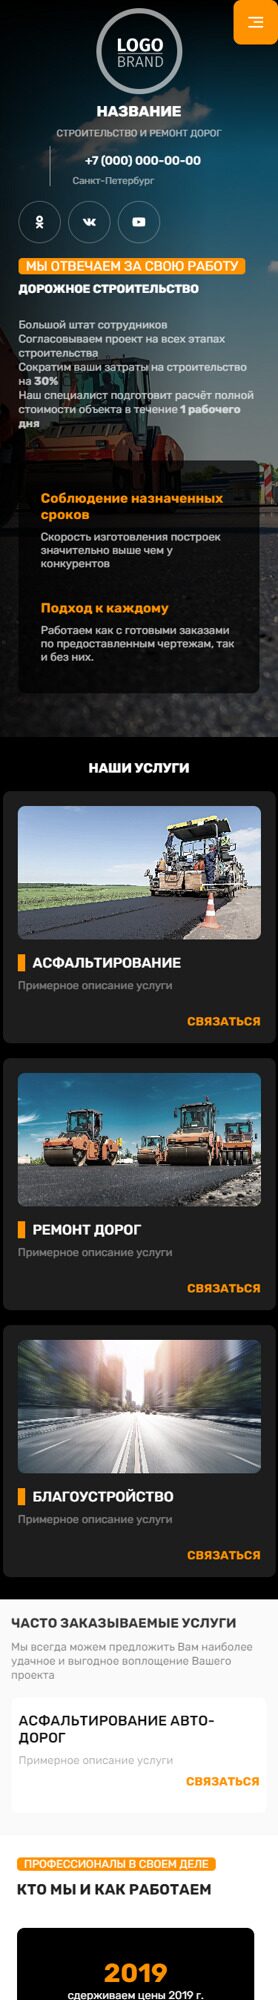 Готовый Сайт-Бизнес № 5282522 - Строительство и ремонт дорог, мостов (Мобильная версия)